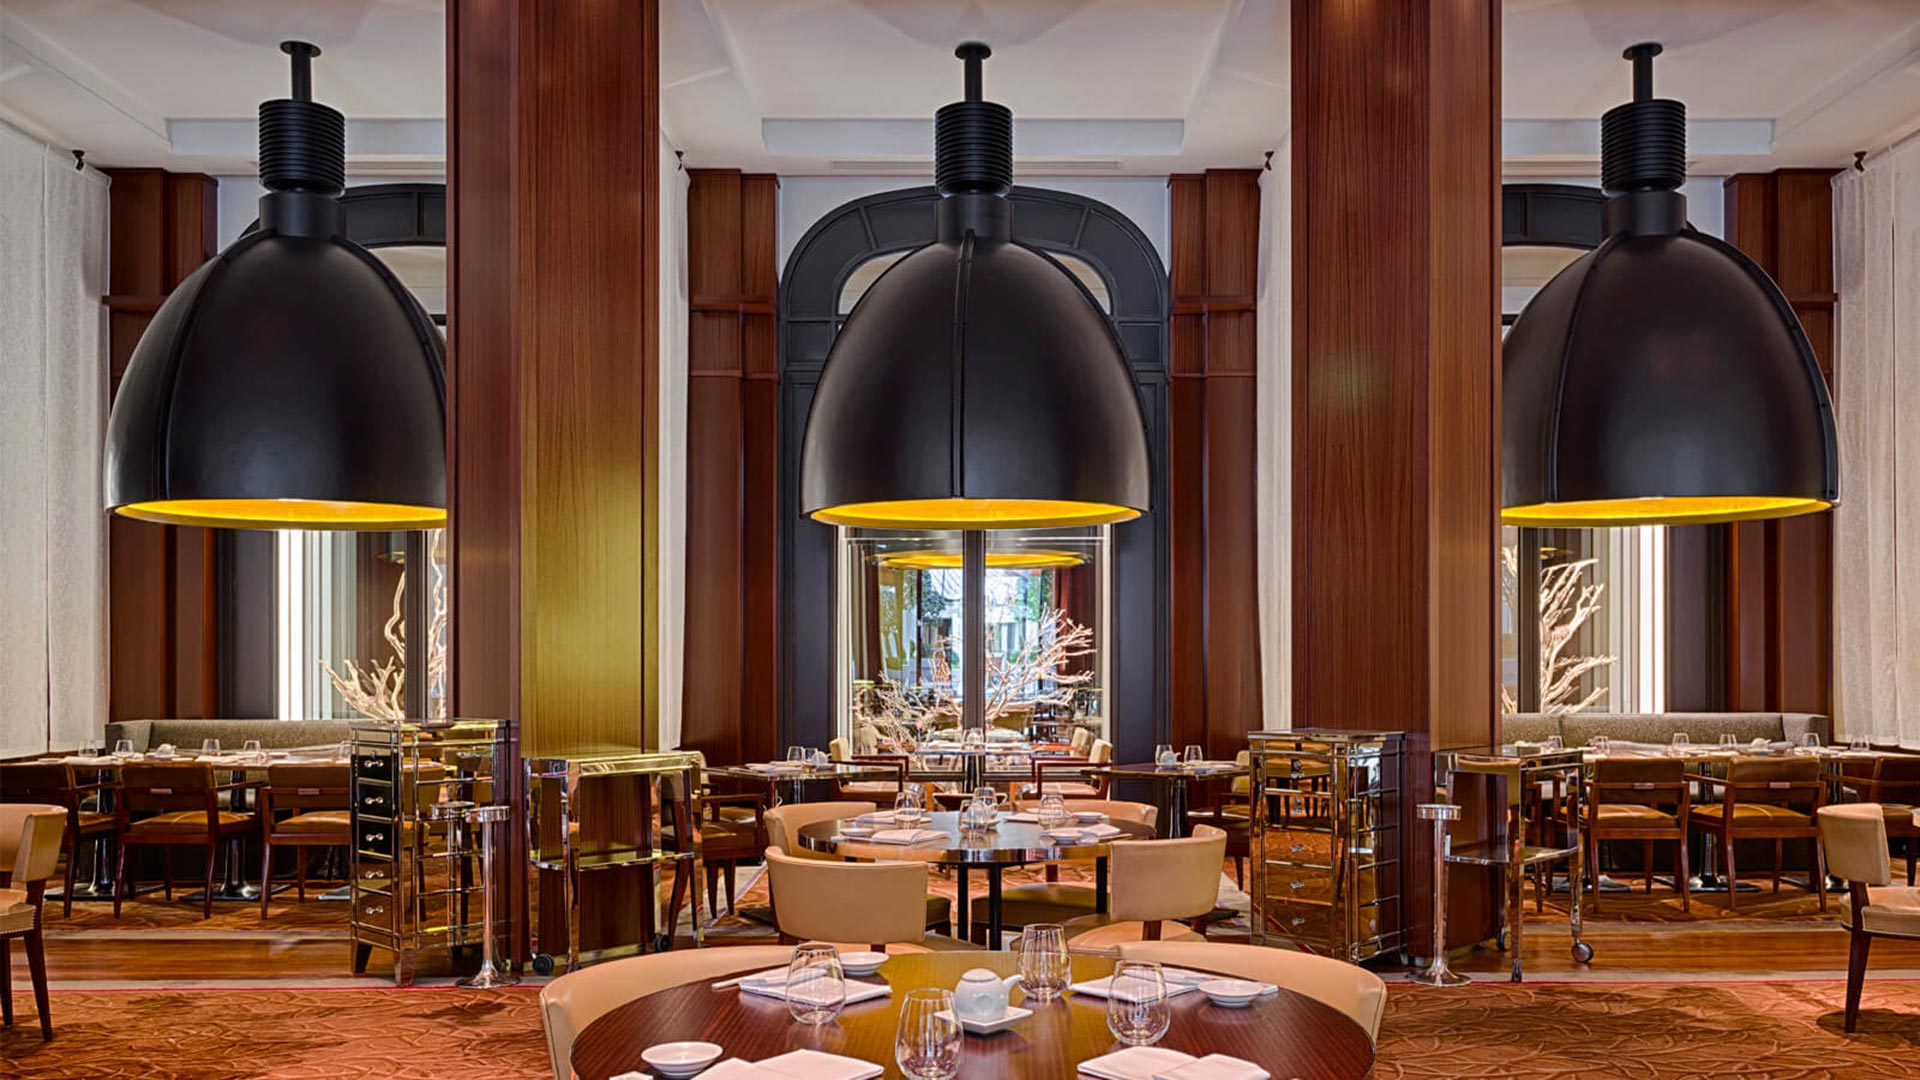 Le Royal Monceau cuenta con diversos restaurantes dentro de su establecimiento (raffles)